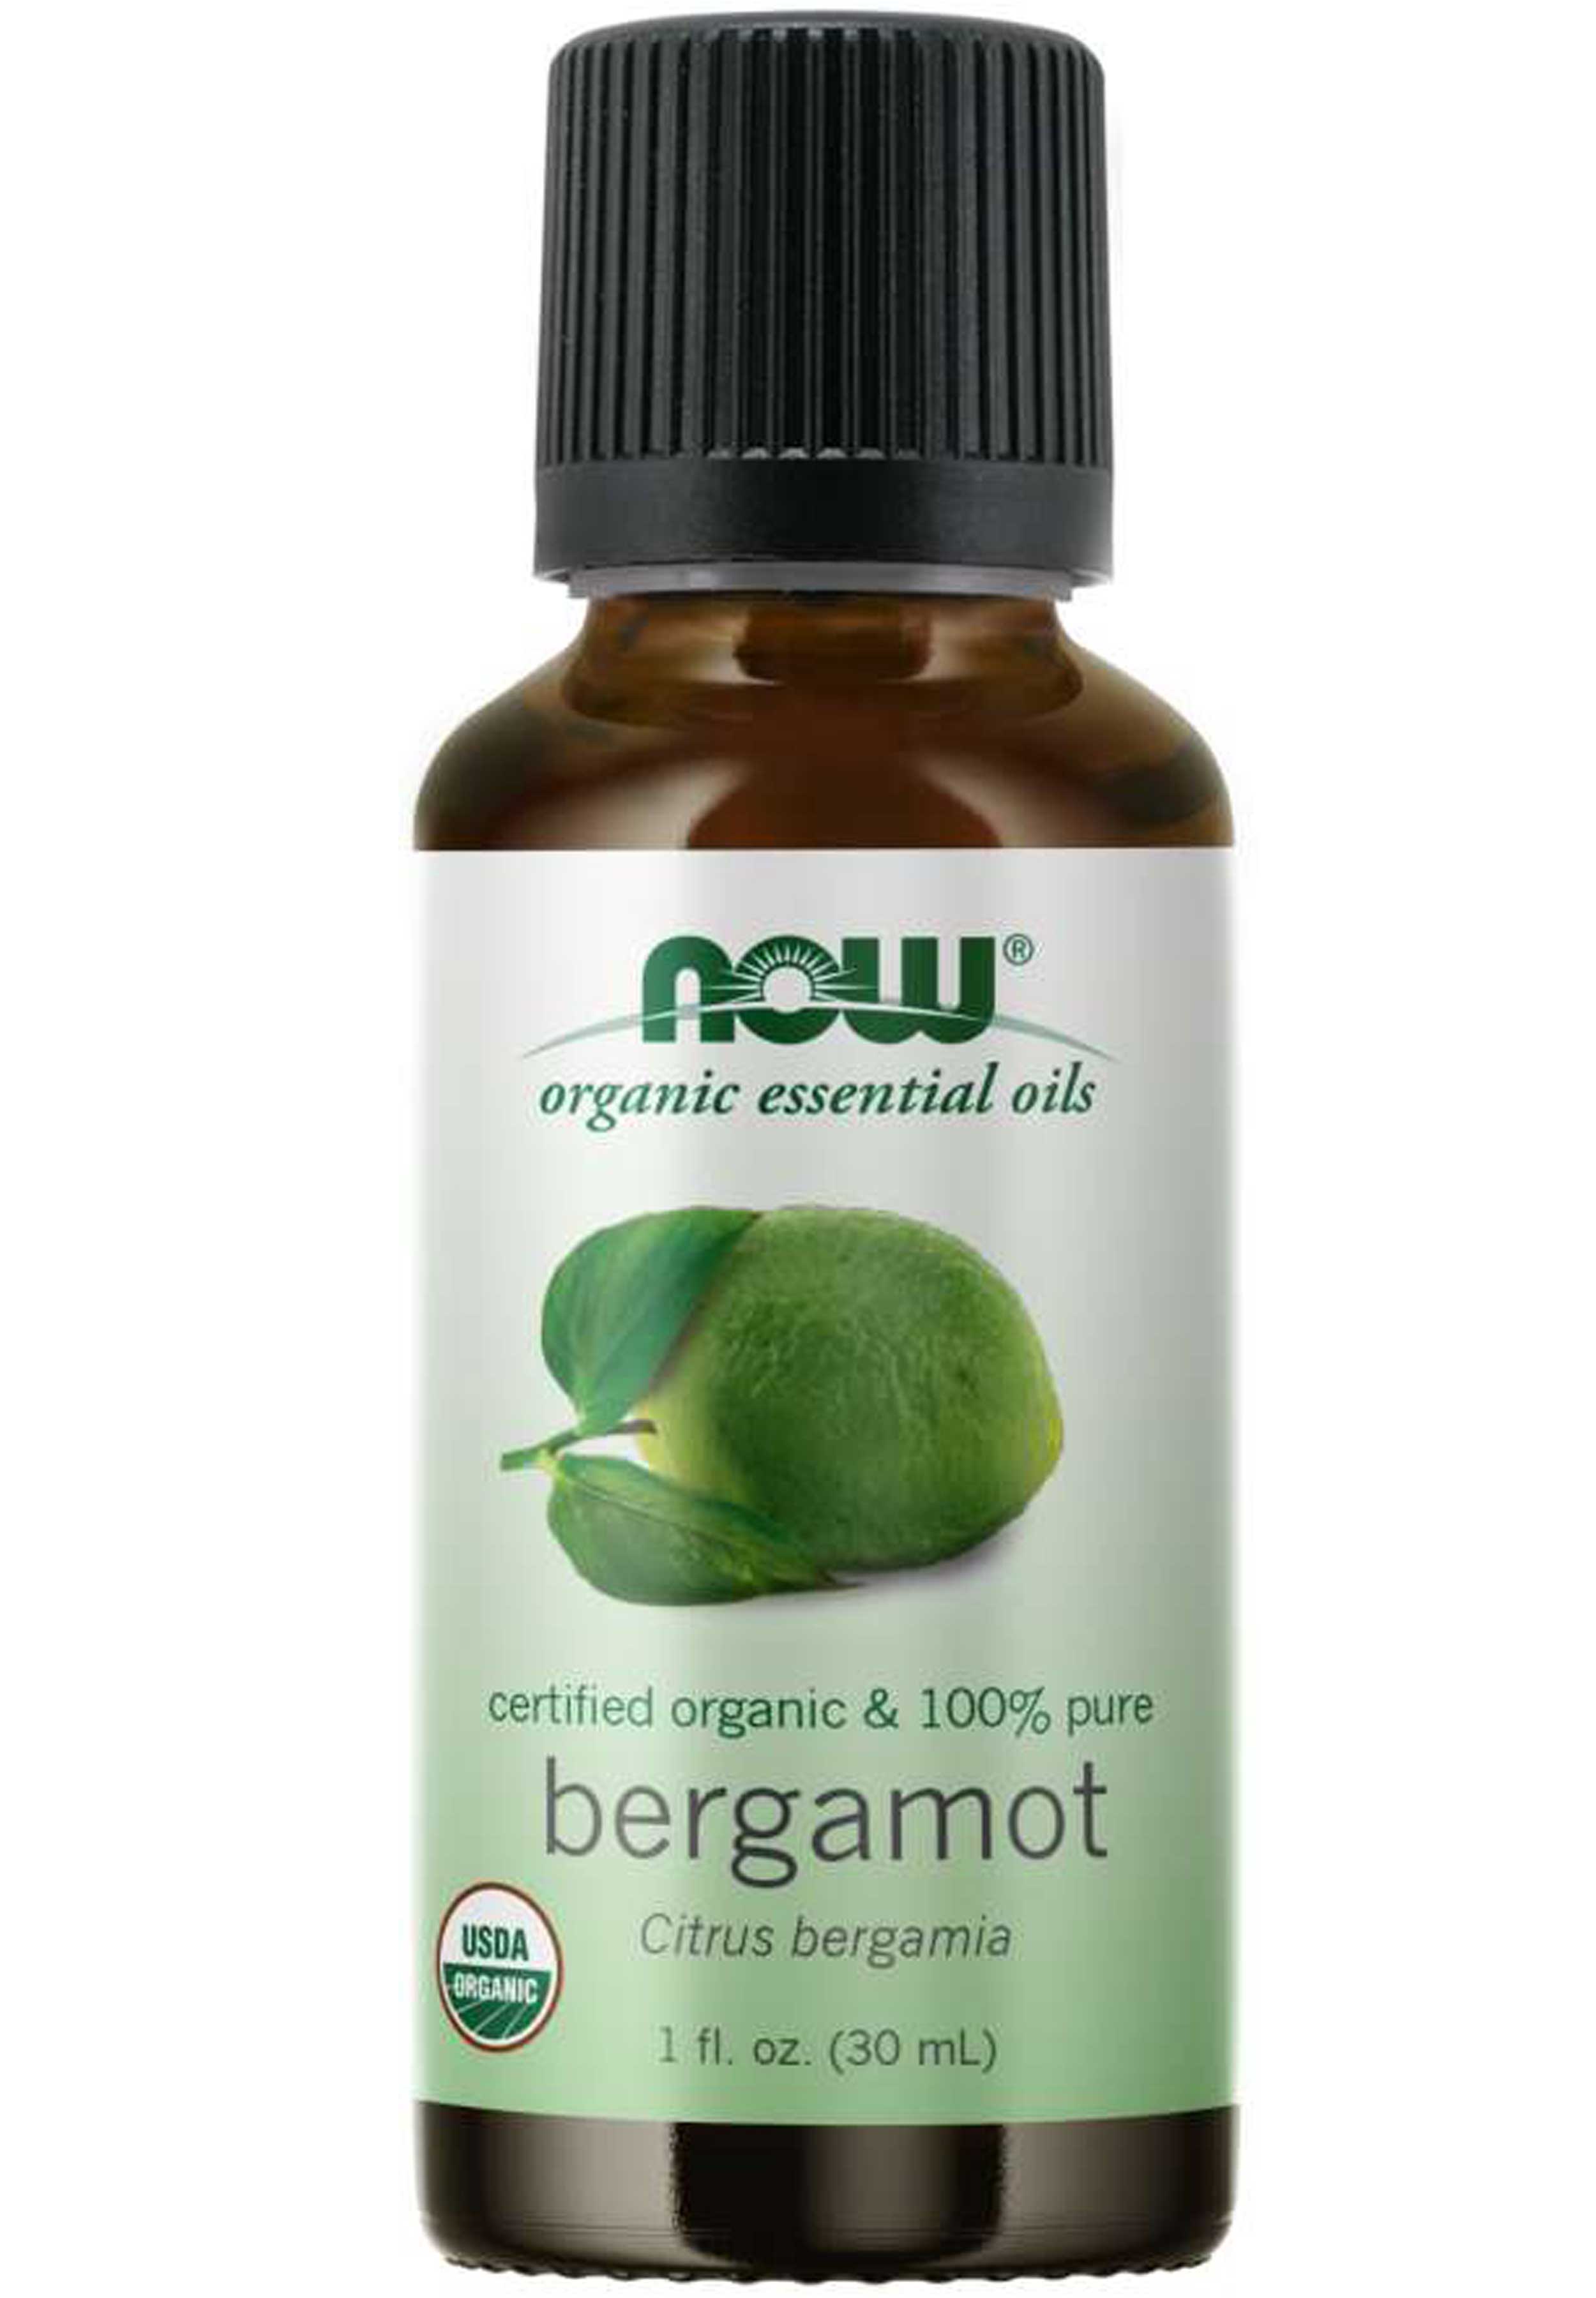 NOW Organic Essential Oils Bergamot Oil